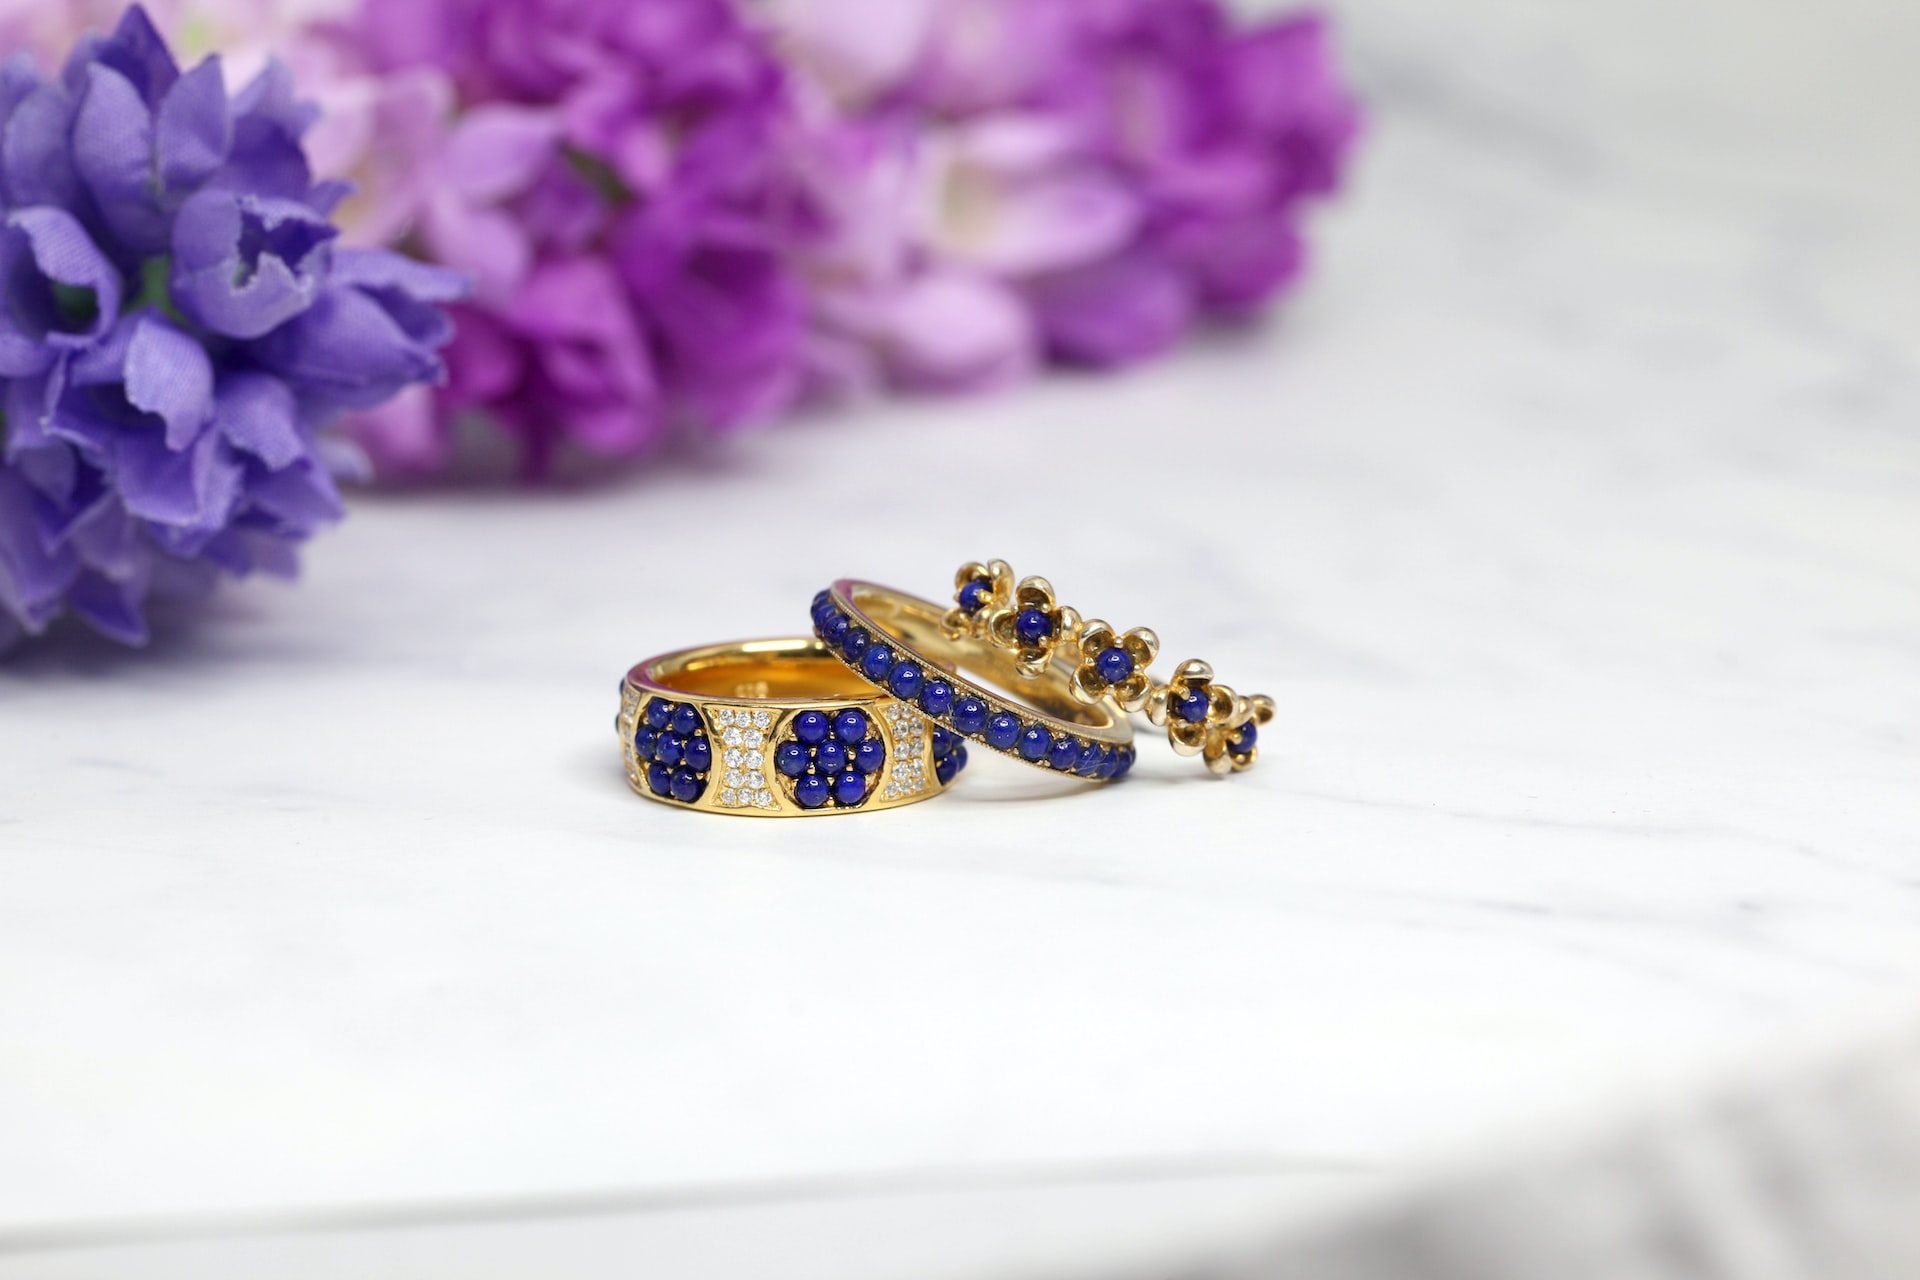 Don’t overlook Ukrainian handmade jewellery – it’s stunning!